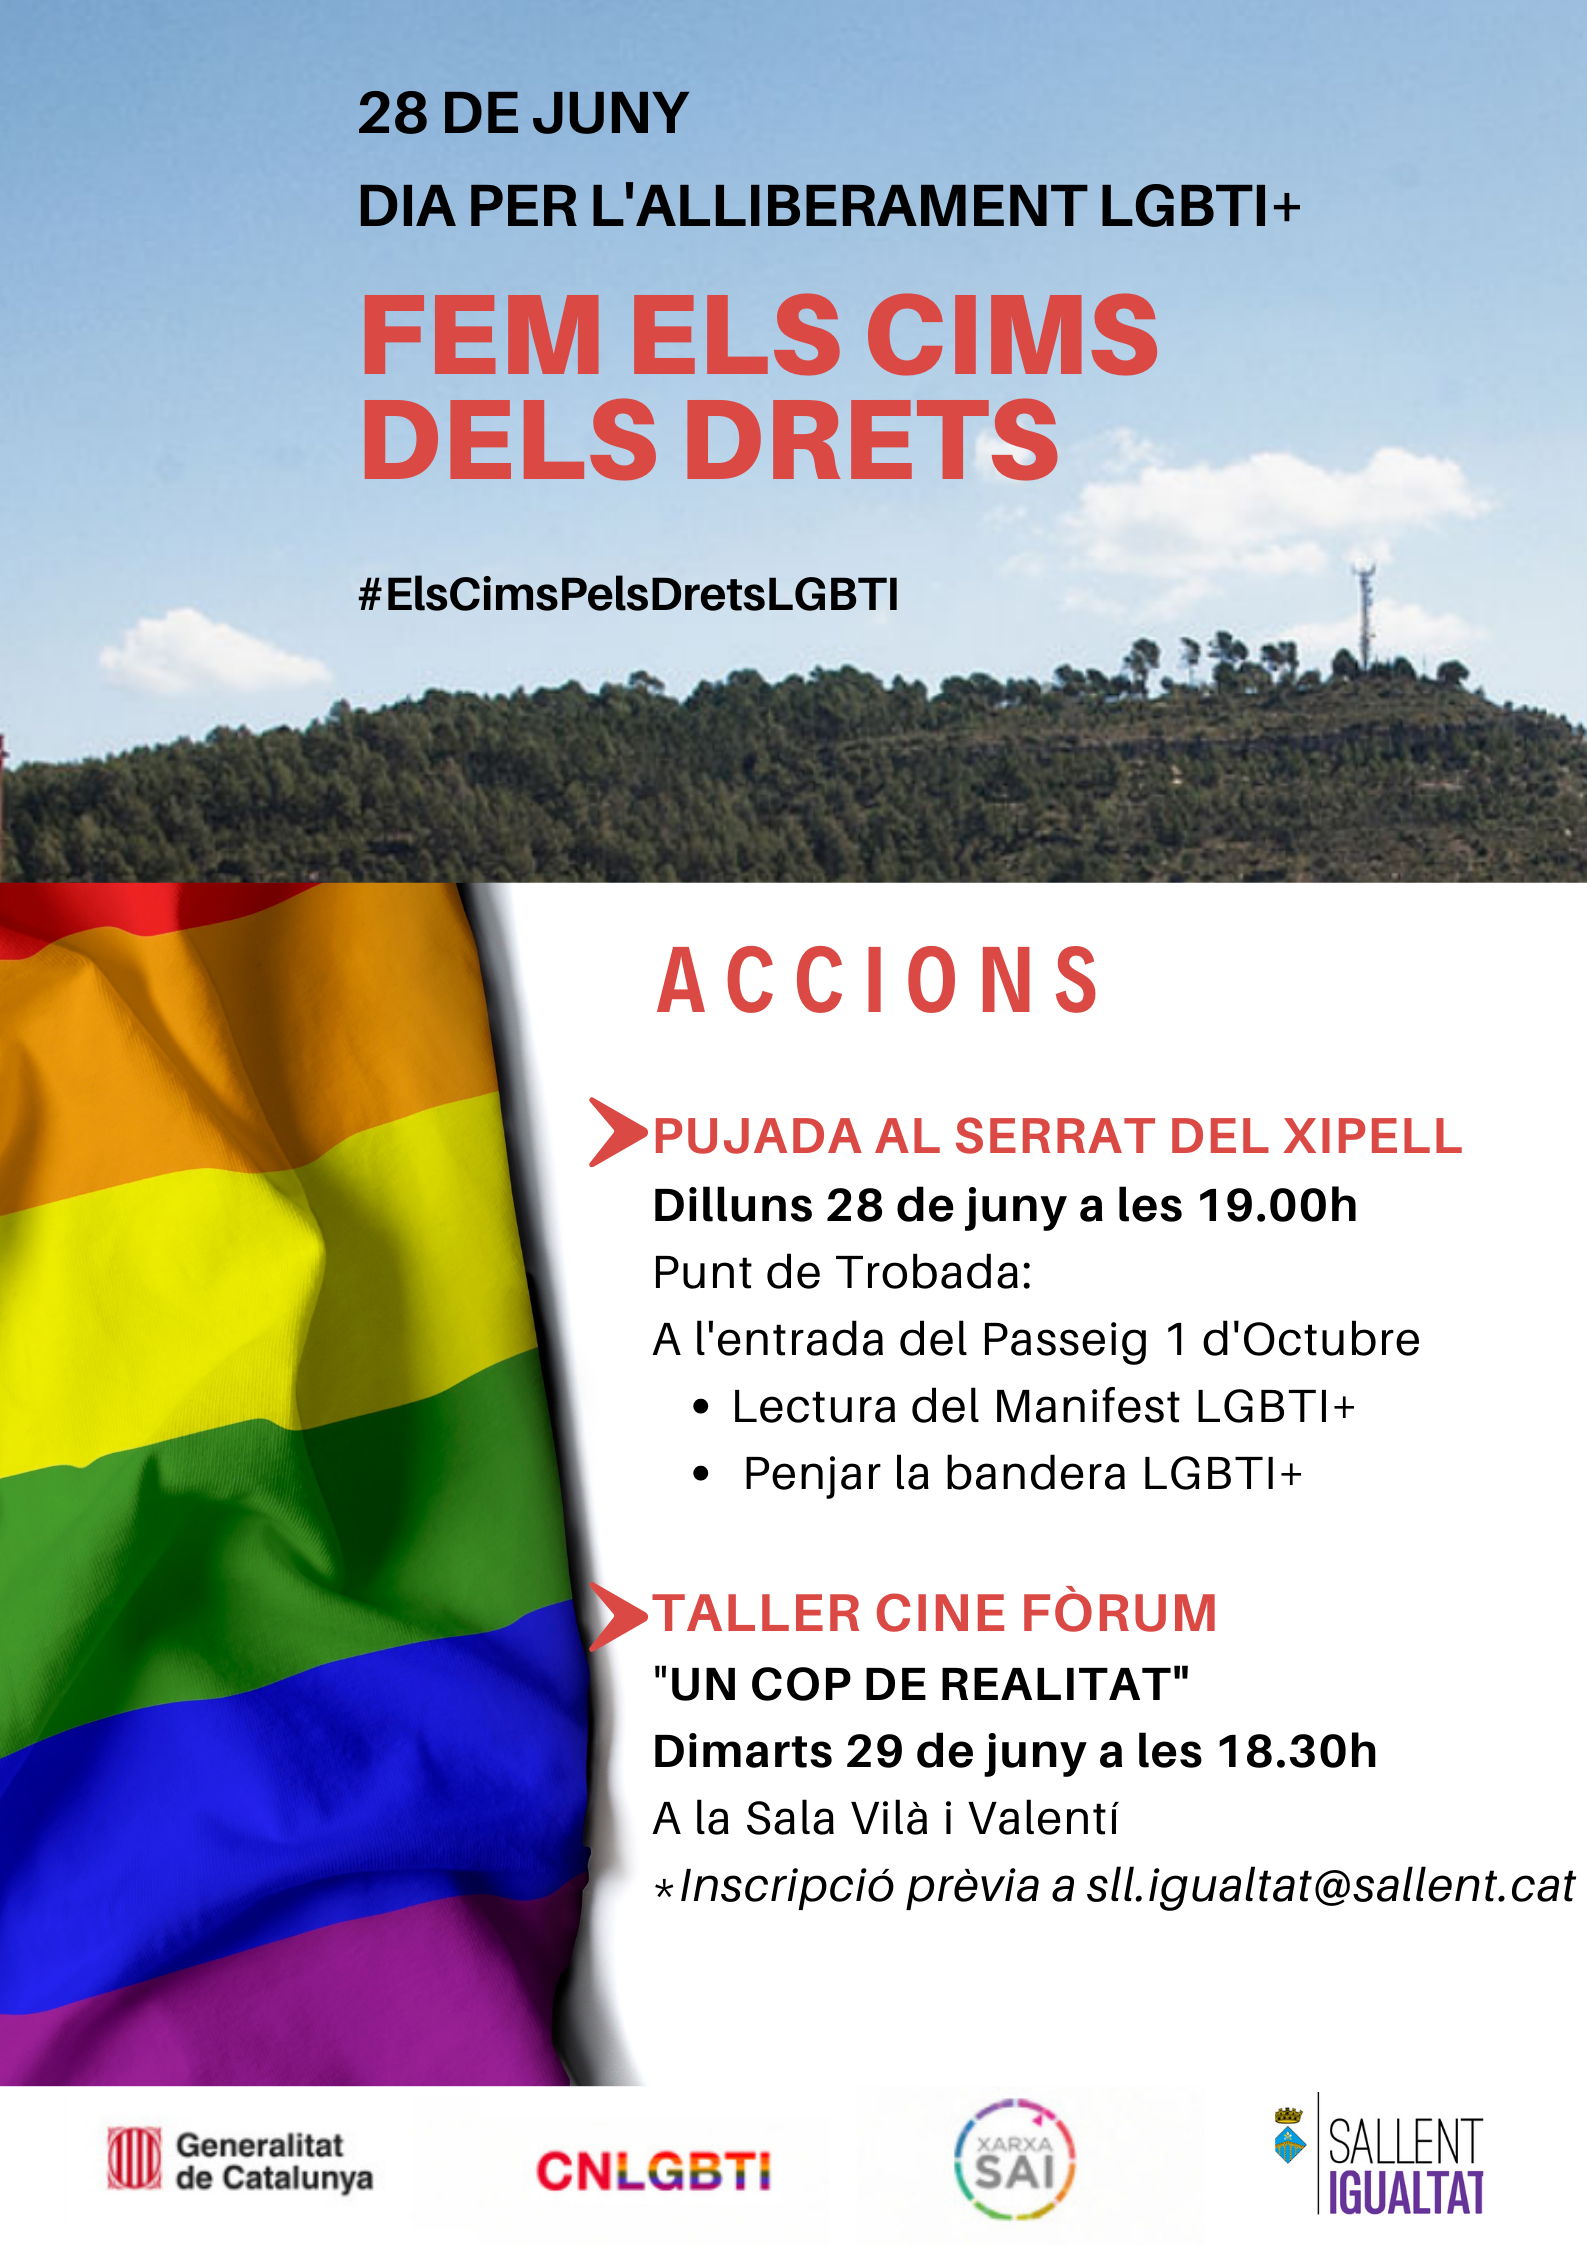 Reivindiquem el Dia per l'alliberament LGBTI+